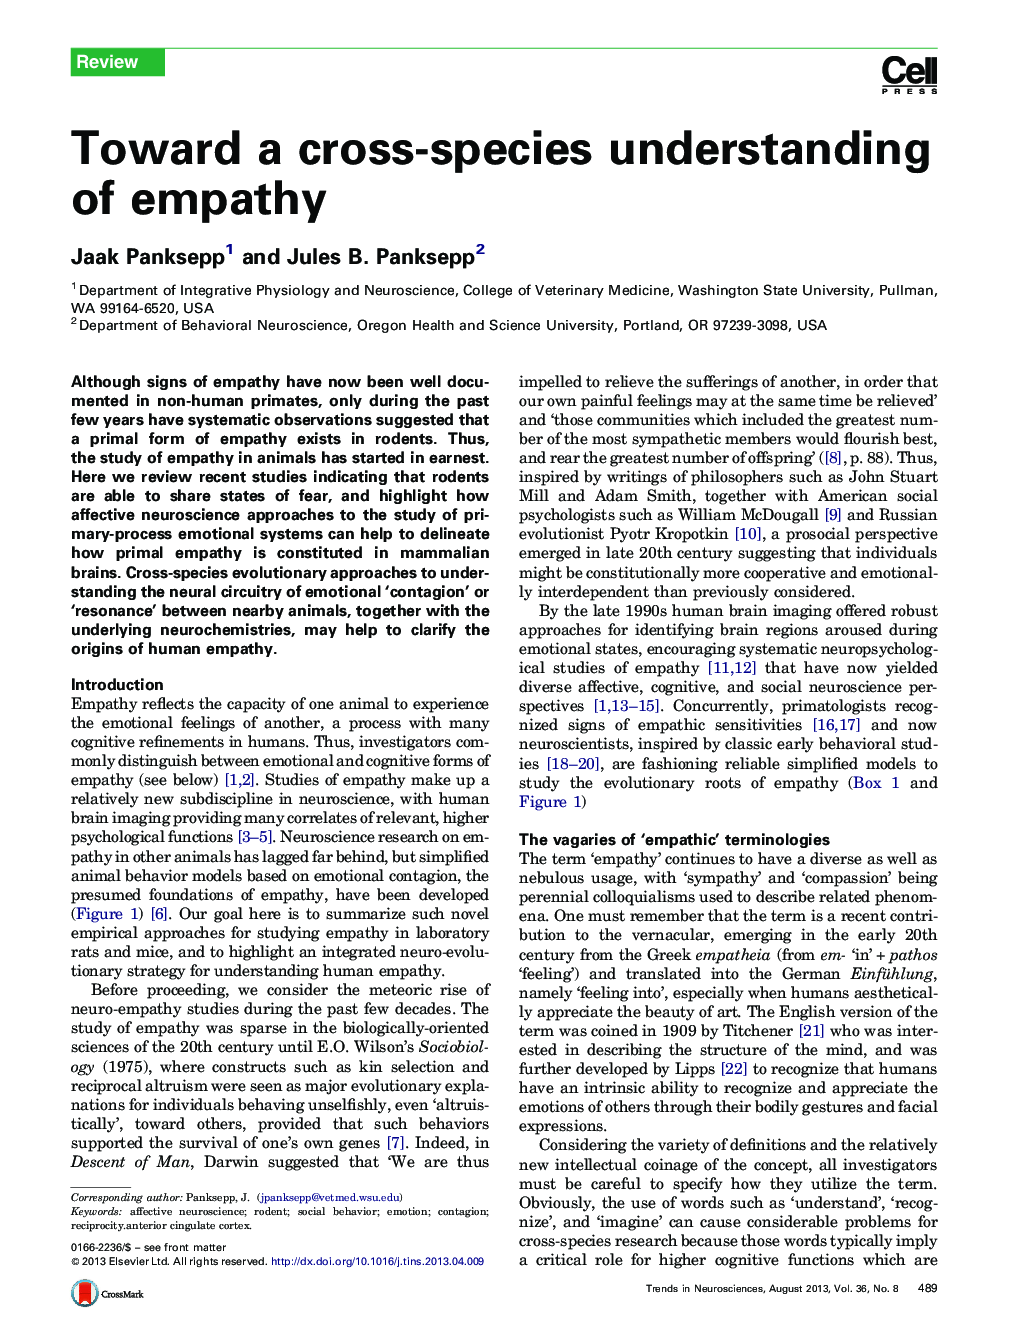 Toward a cross-species understanding of empathy